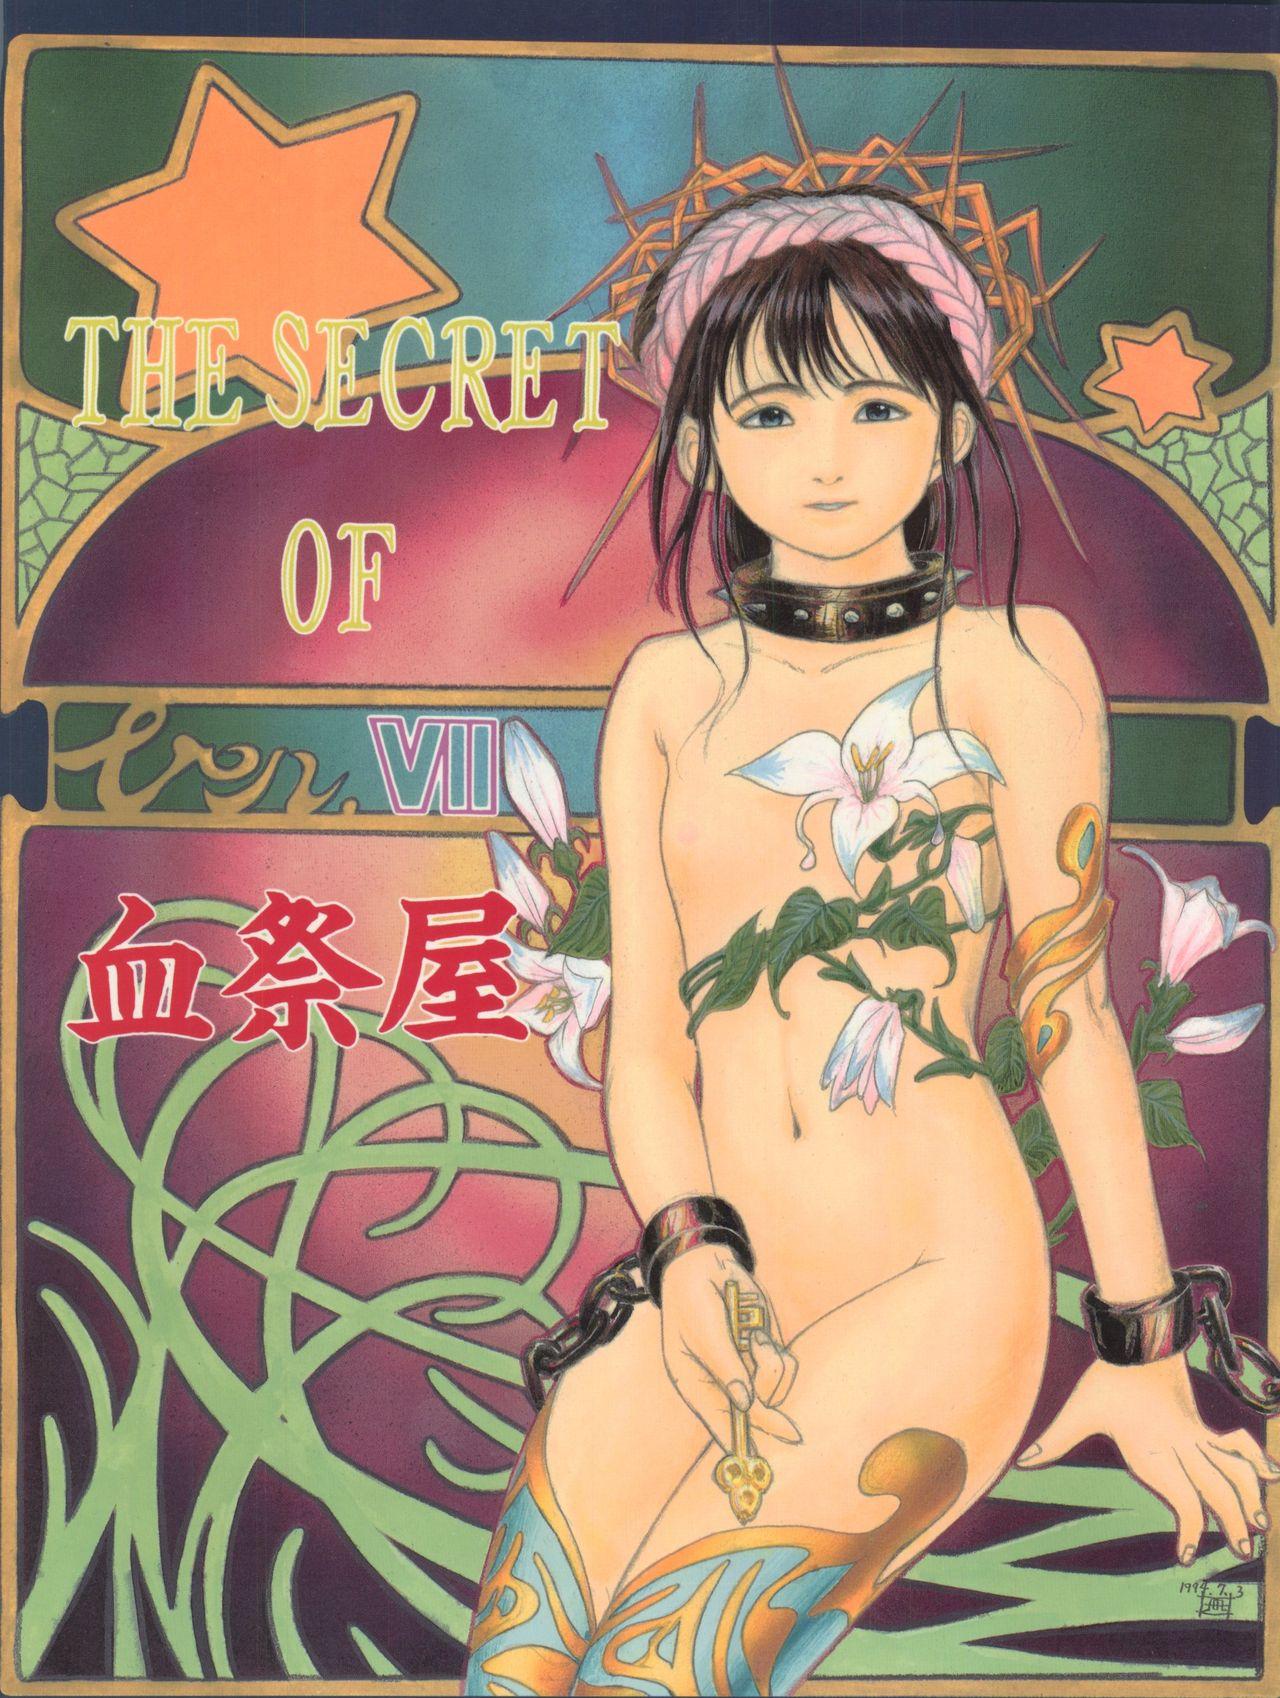 The Secret of Chimatsuriya Vol. VII 0